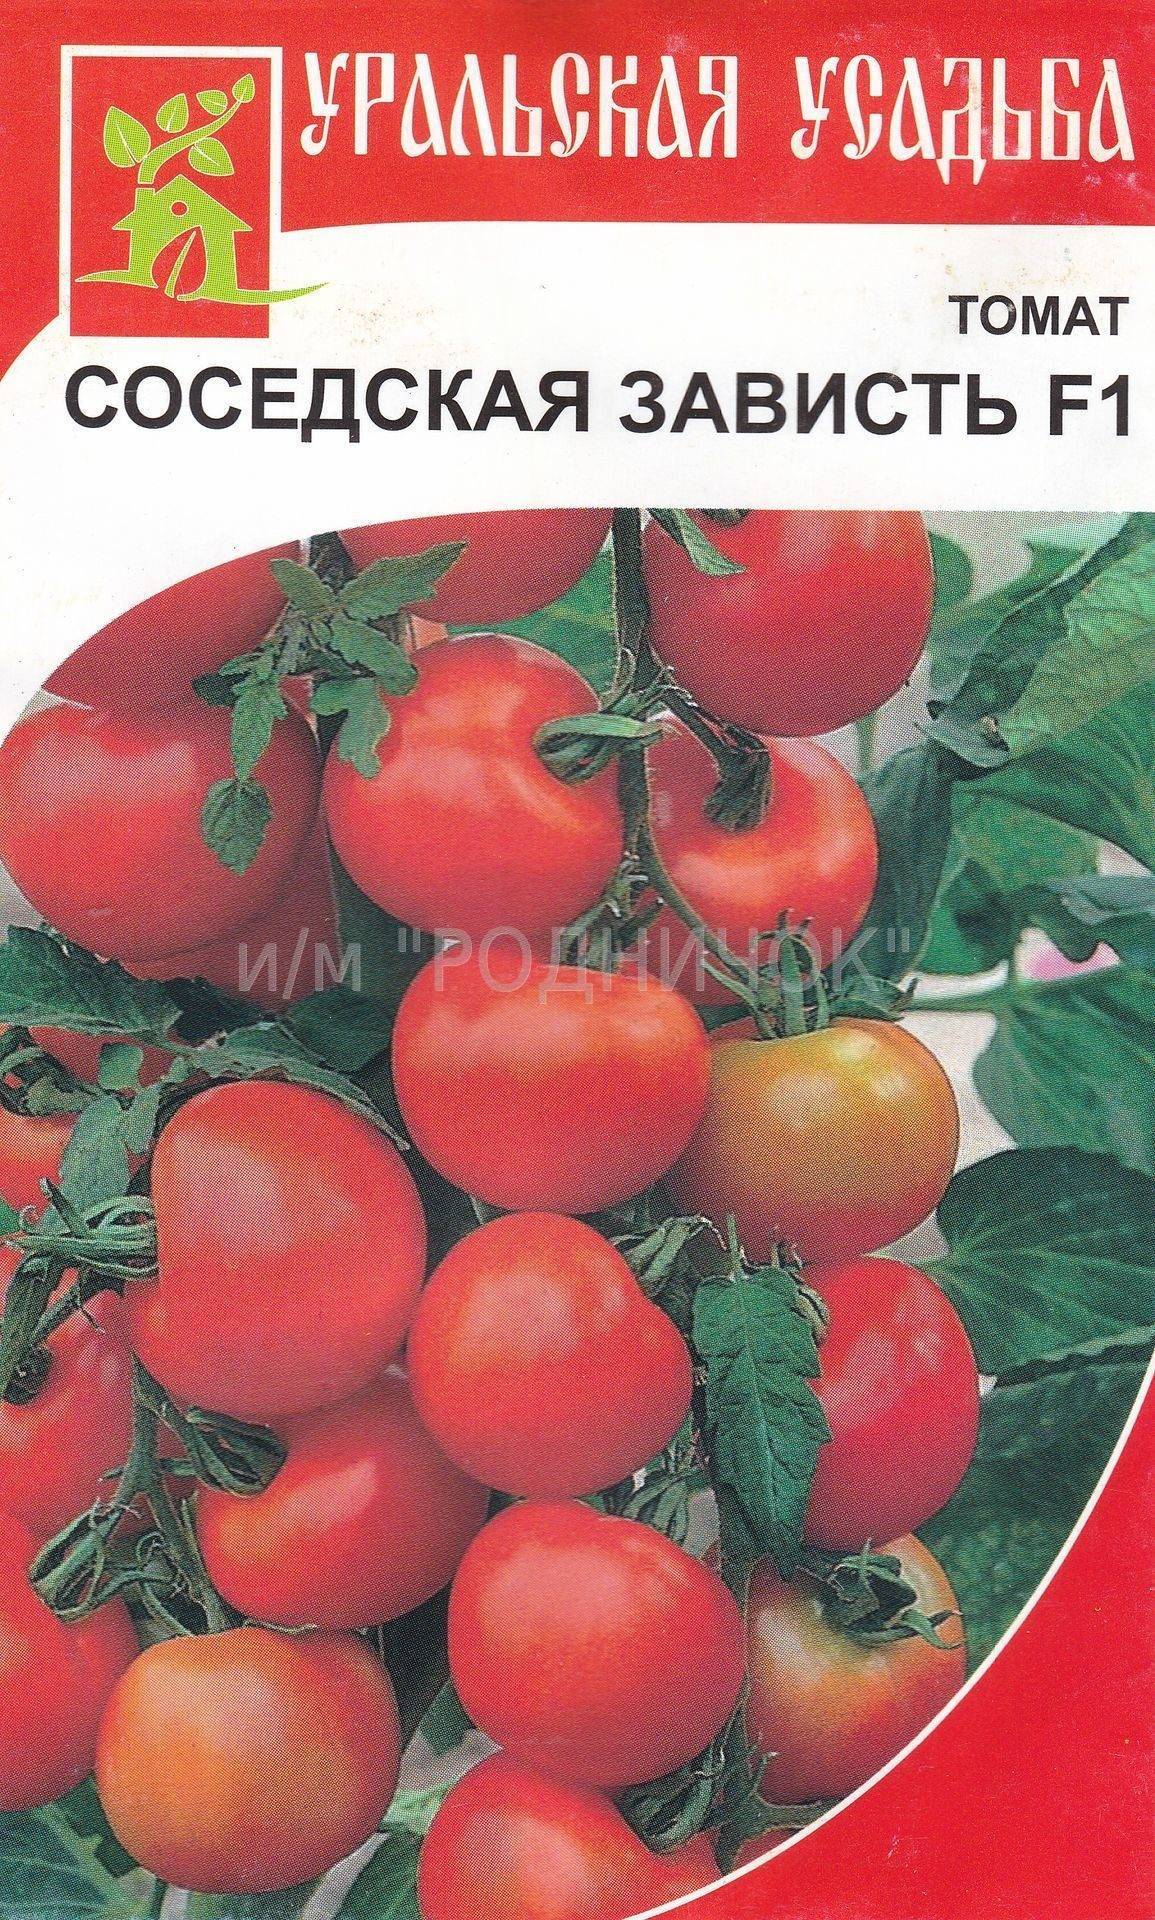 Описание томата Соседская зависть F1 и агротехника выращивания растения